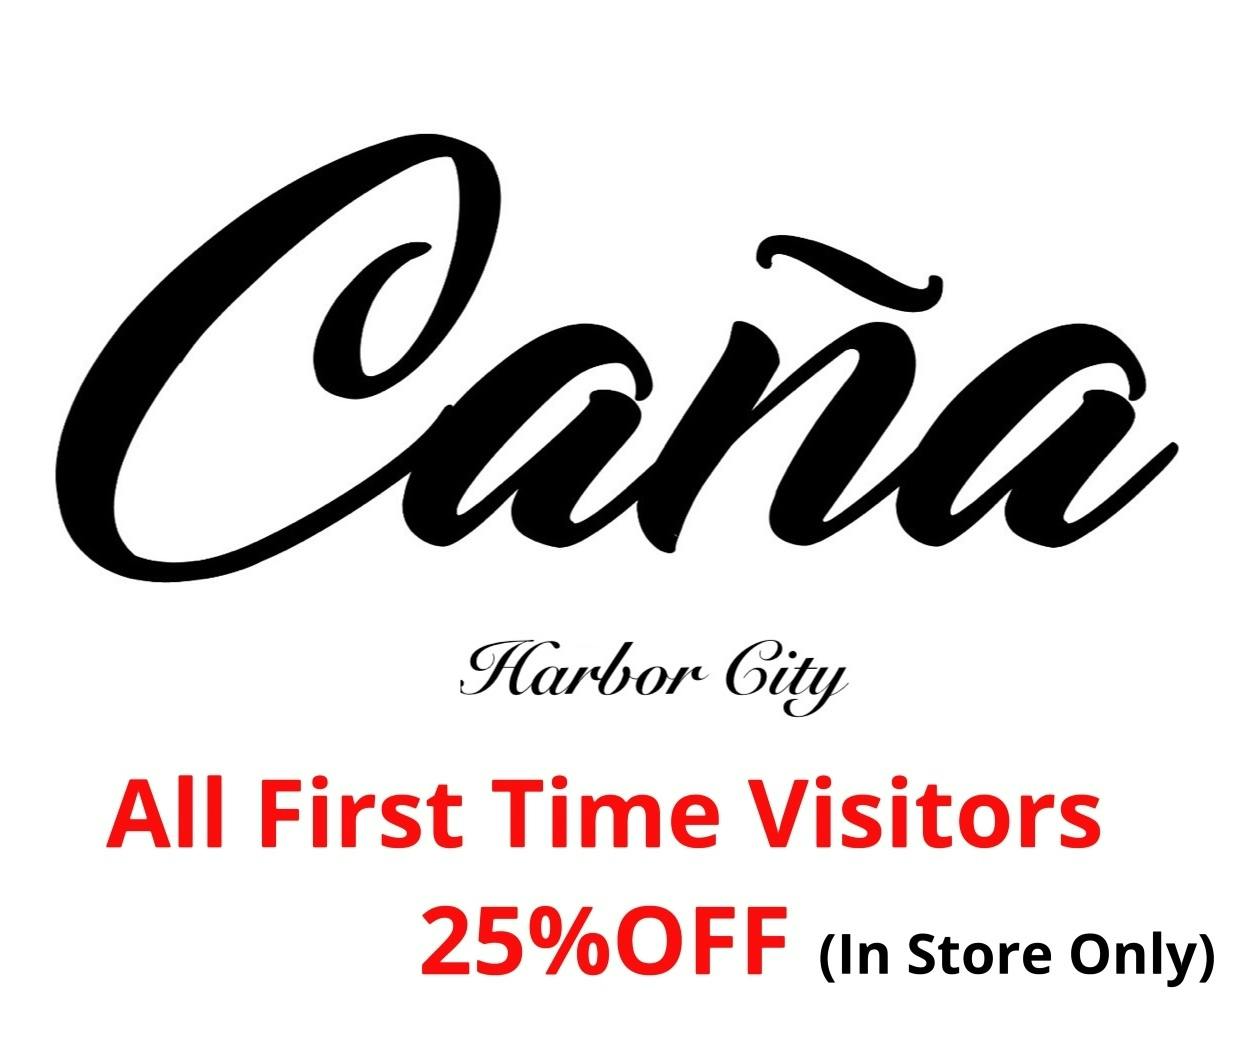 Cana Harbor logo